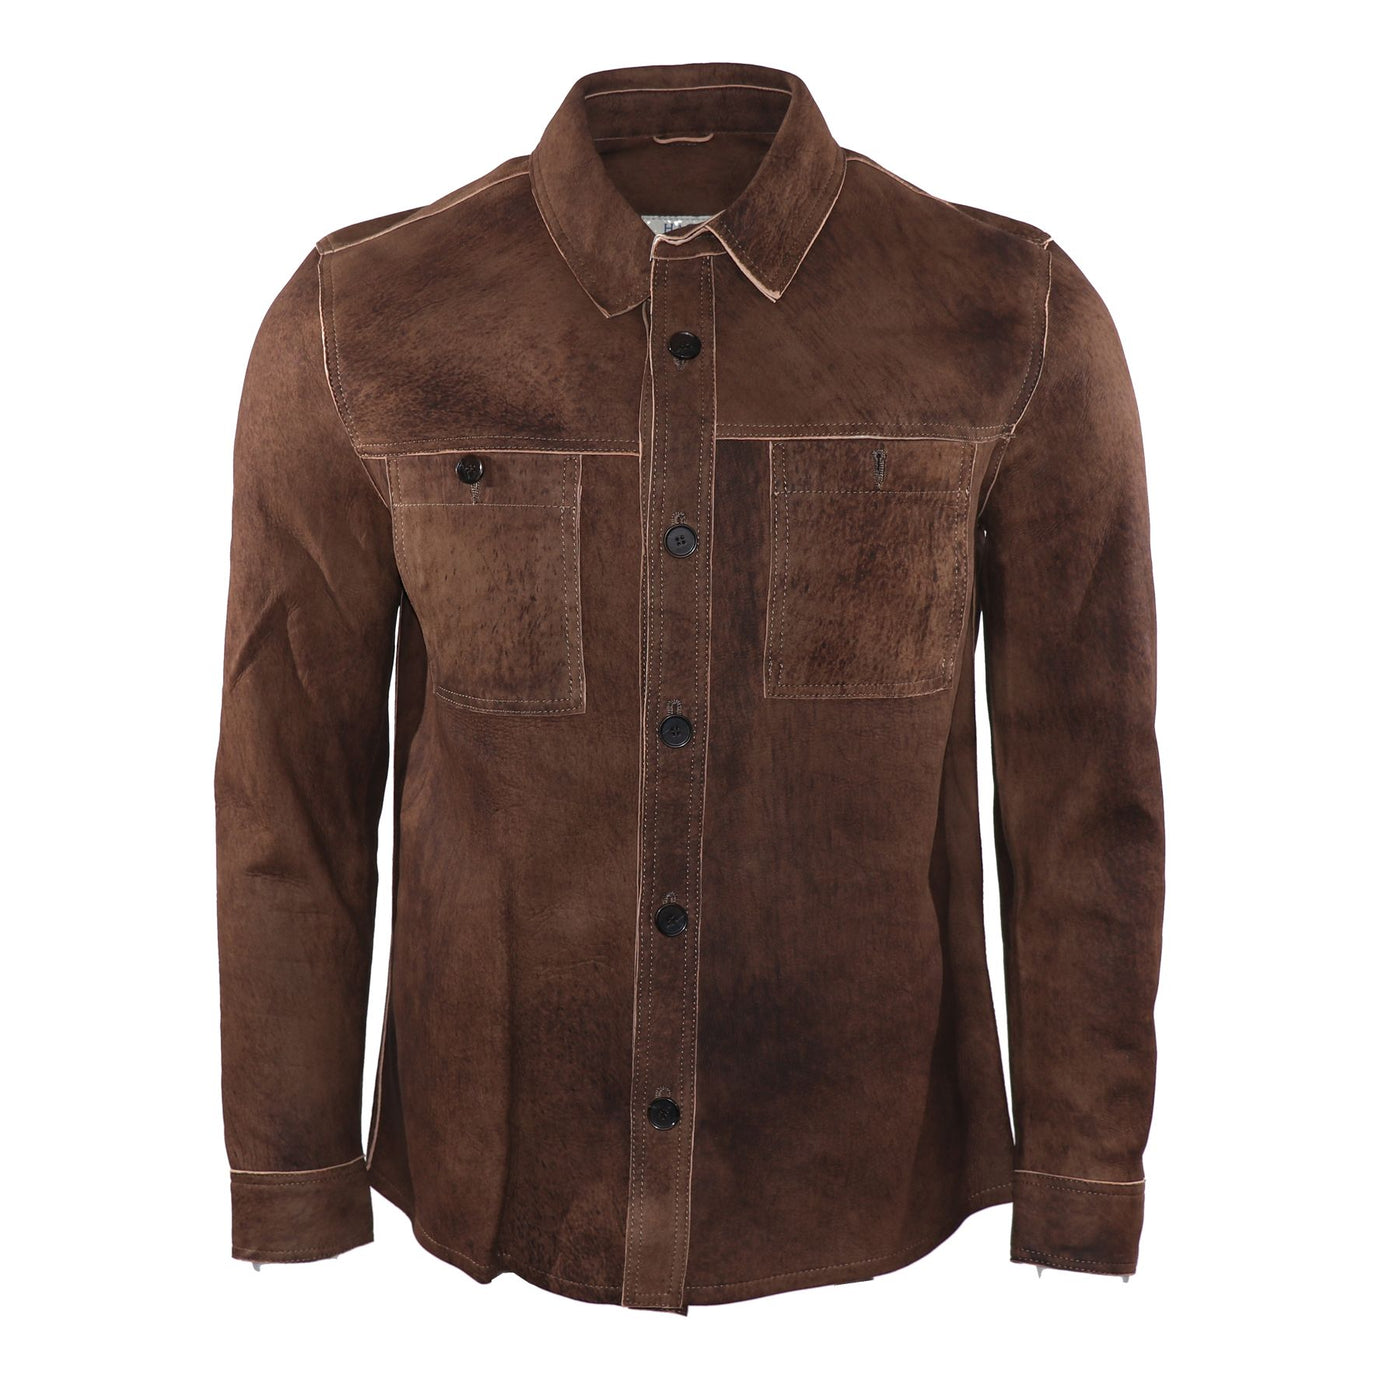 Antiqued Leather Shirt Jacket